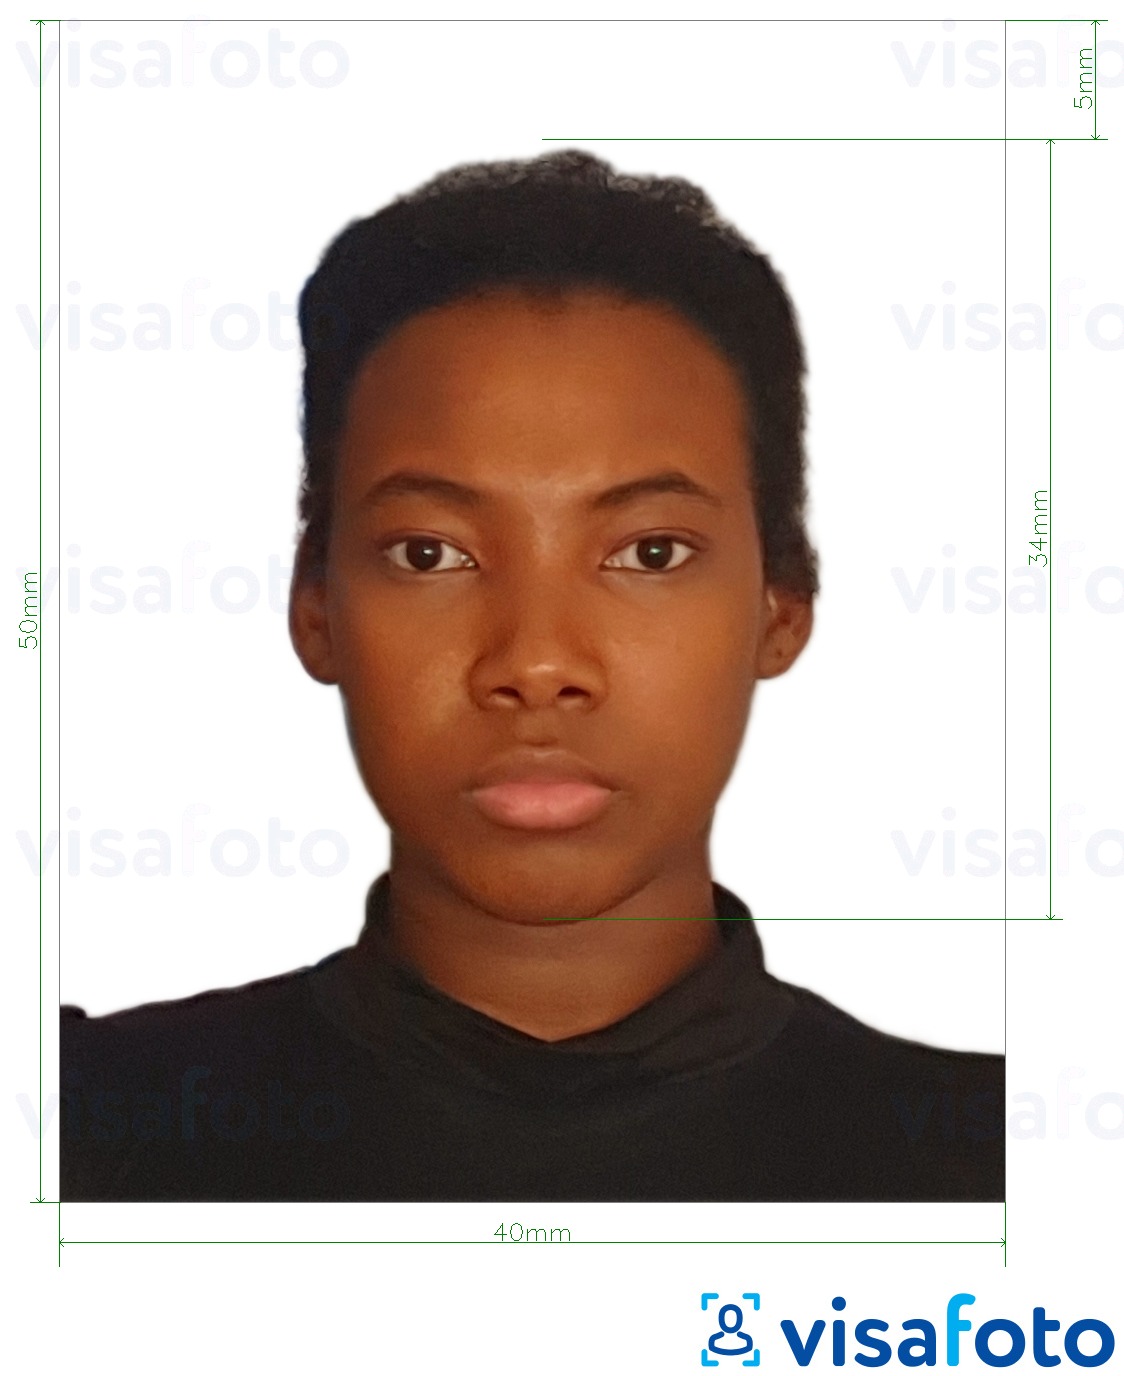 Voorbeeld van foto voor Dominicaanse Republiek visum 4x5 cm met exacte maatspecificatie